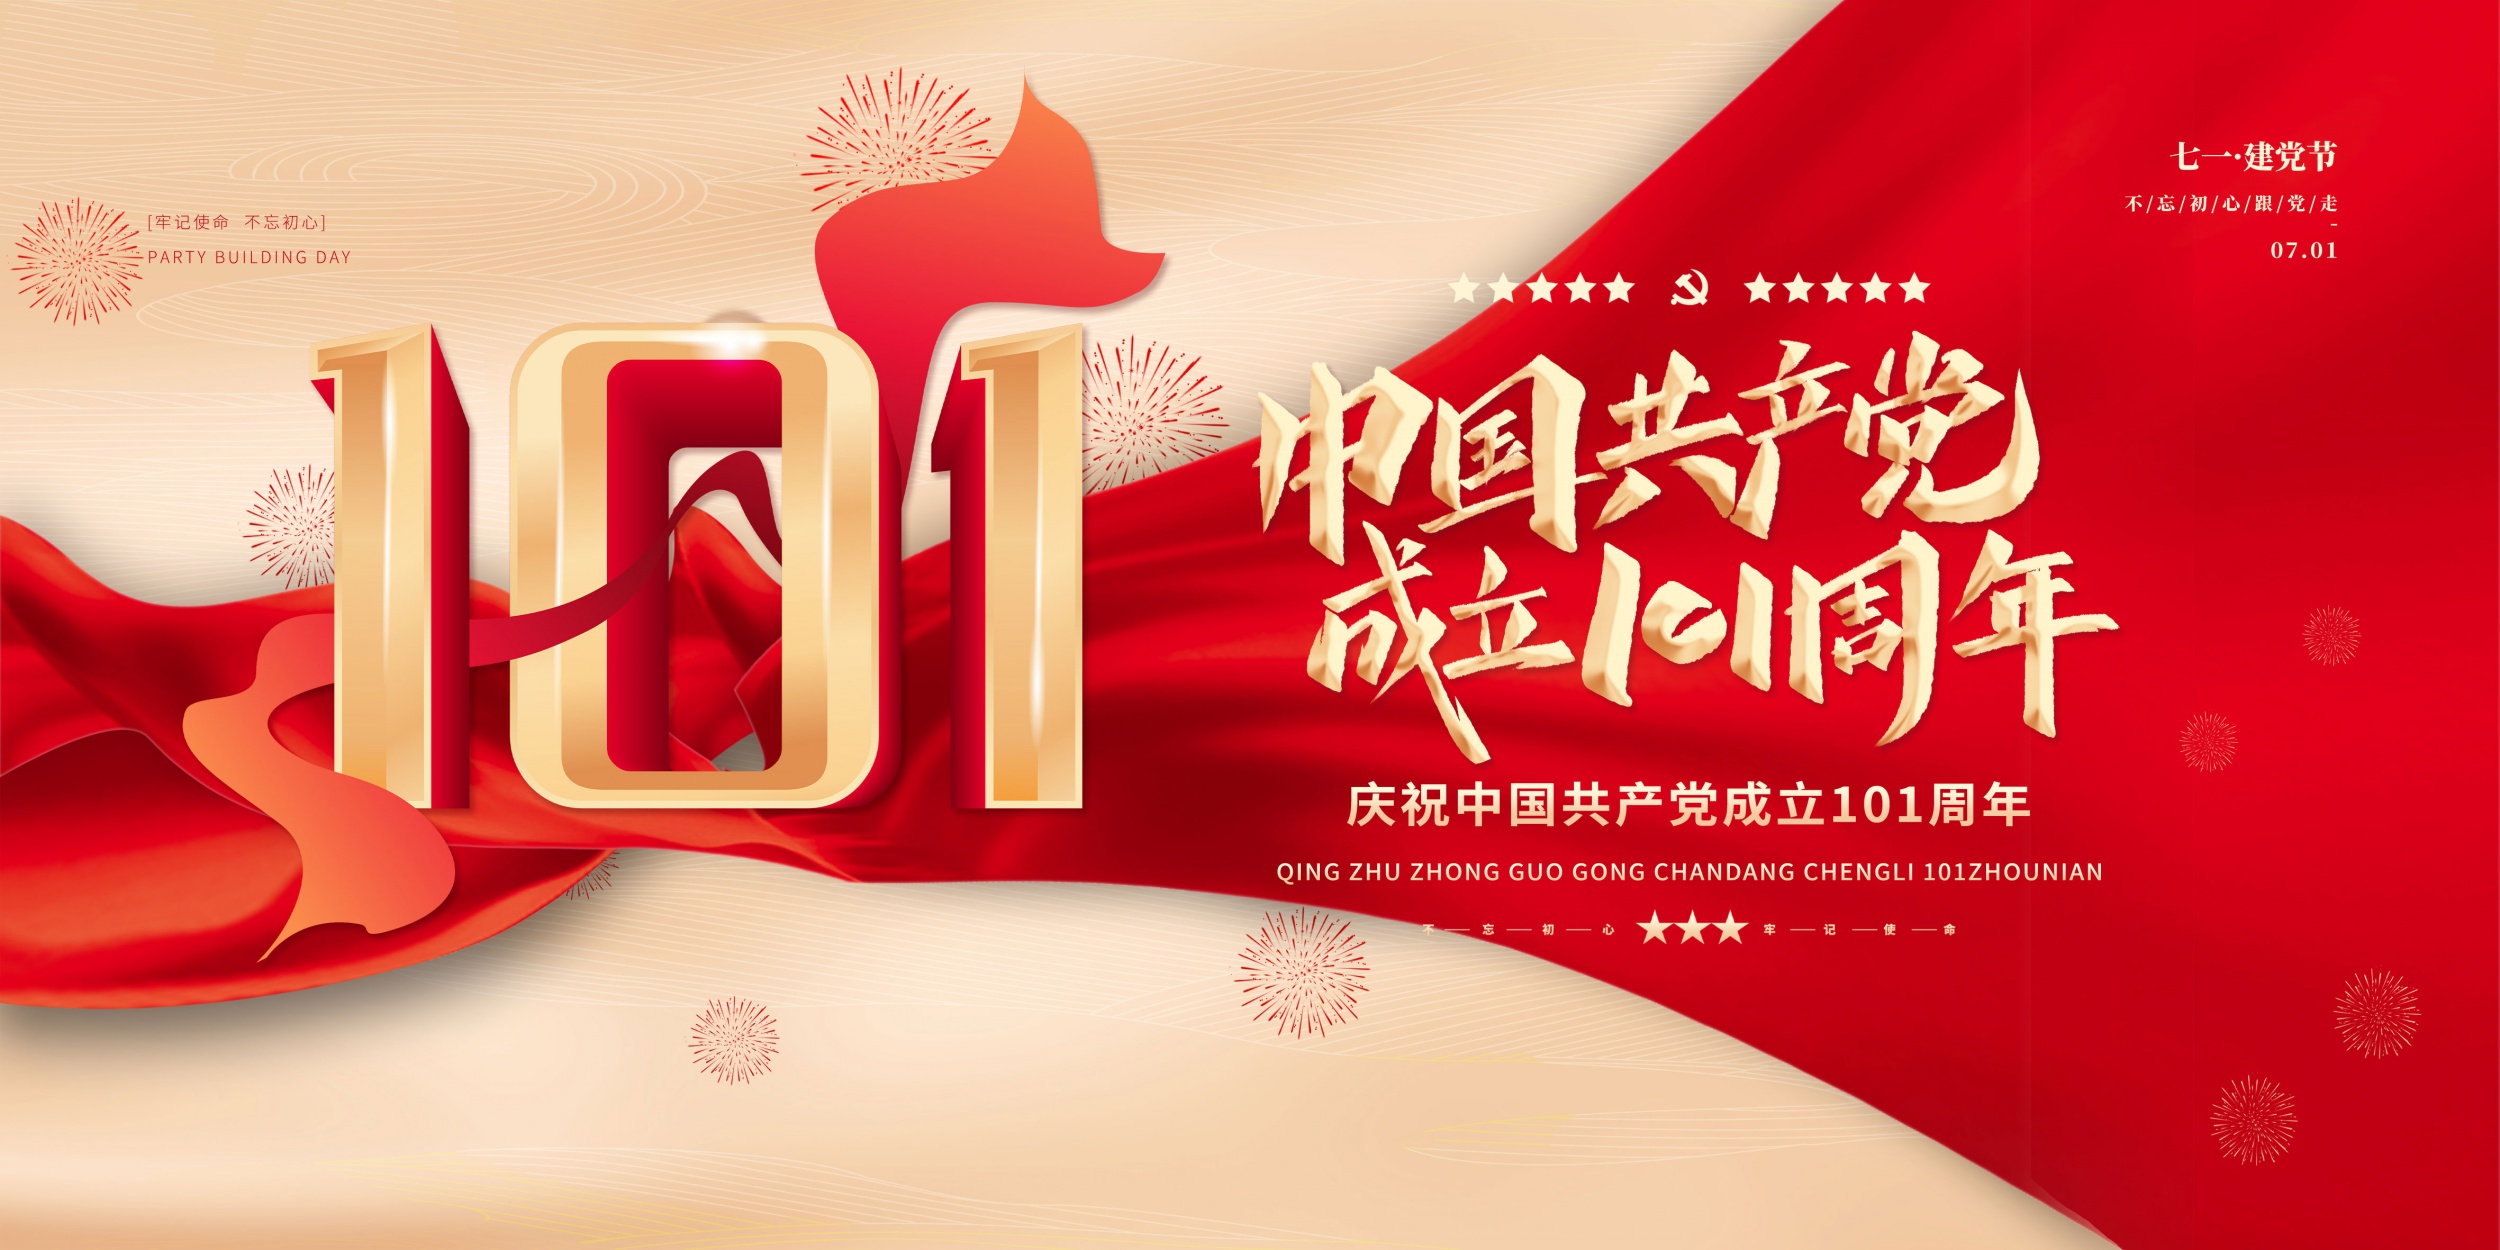 熱烈祝賀中國共產黨成立101周年